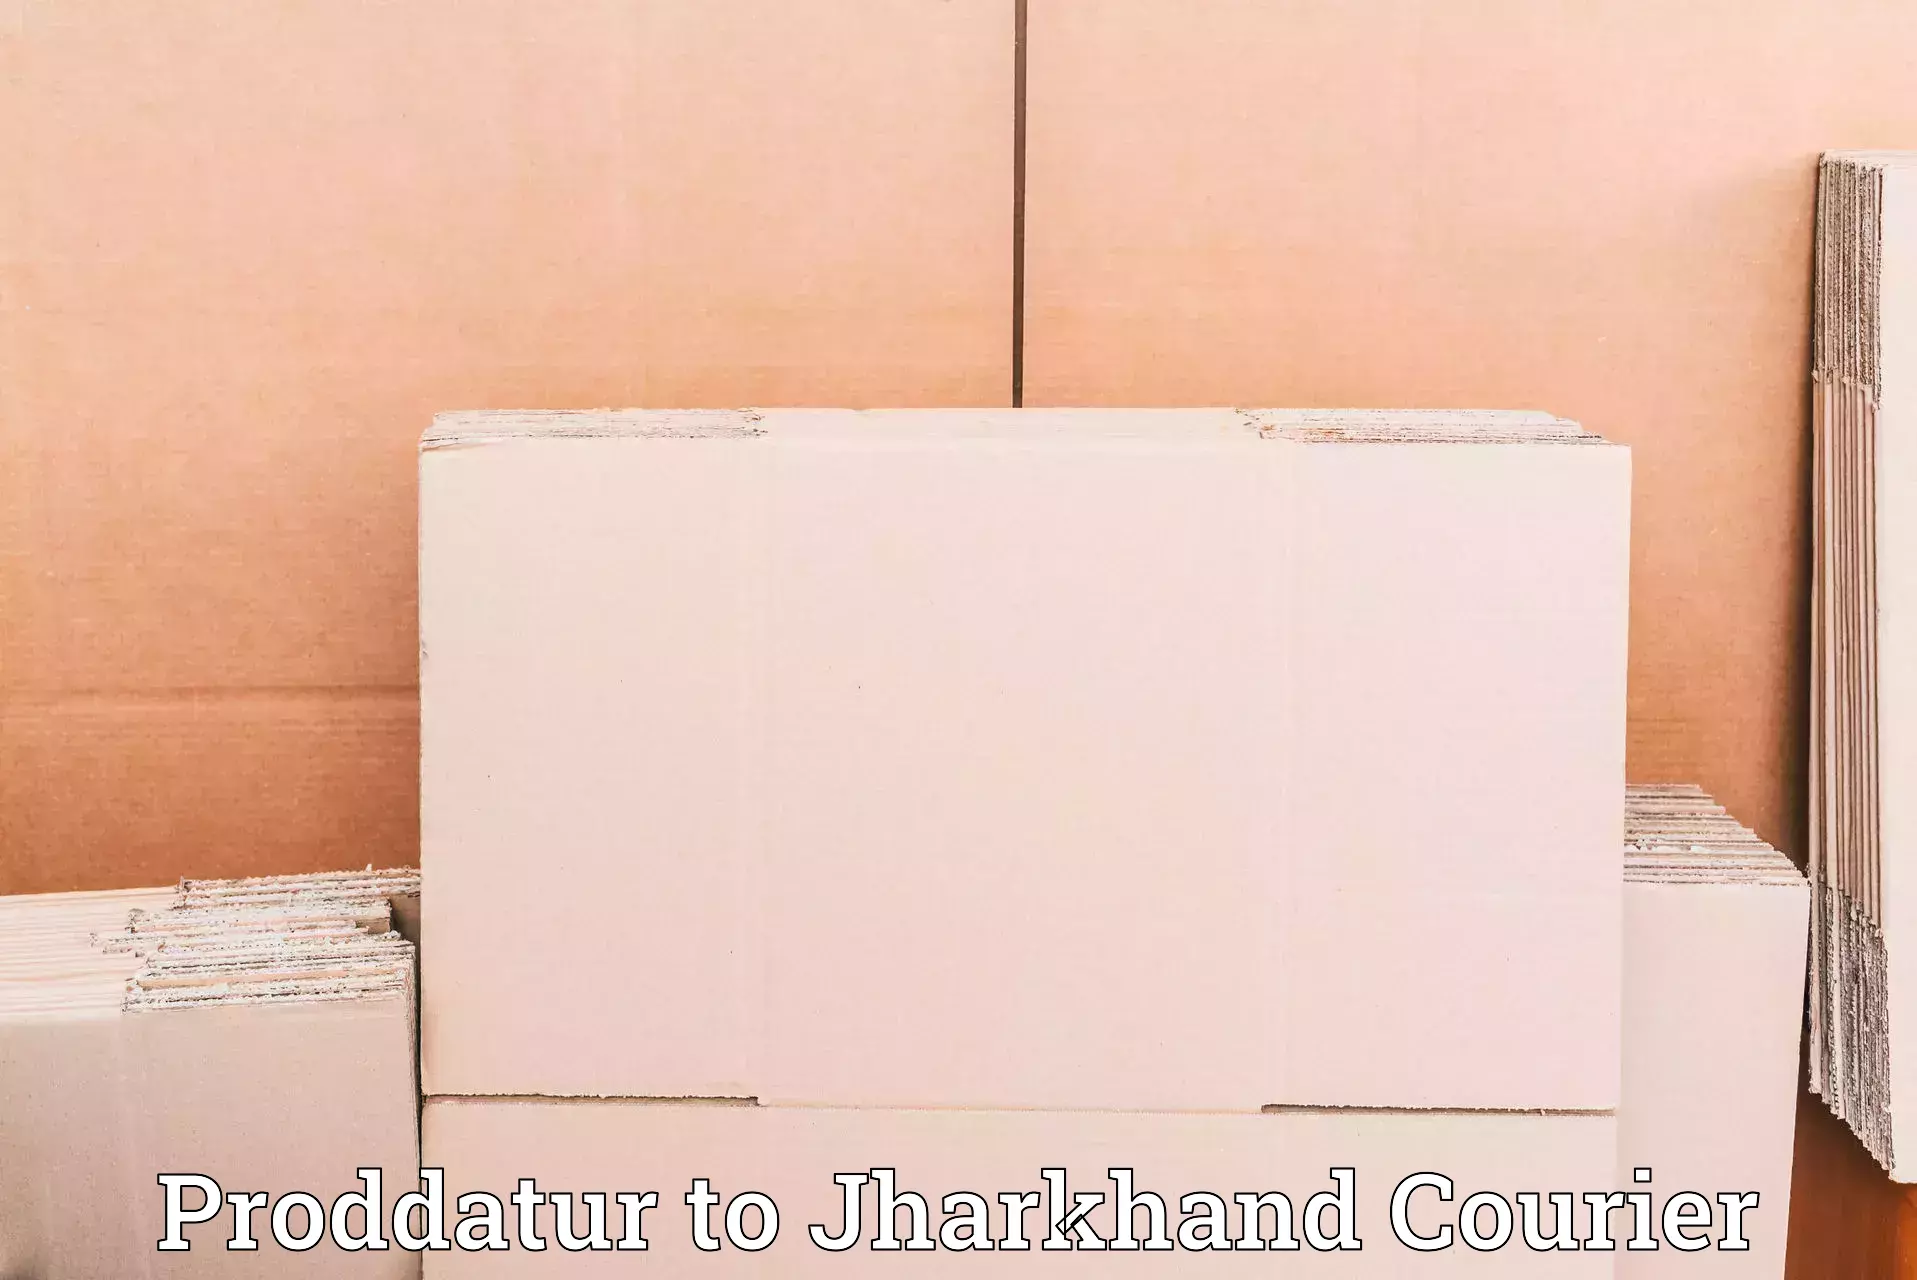 Efficient logistics management Proddatur to Jharkhand